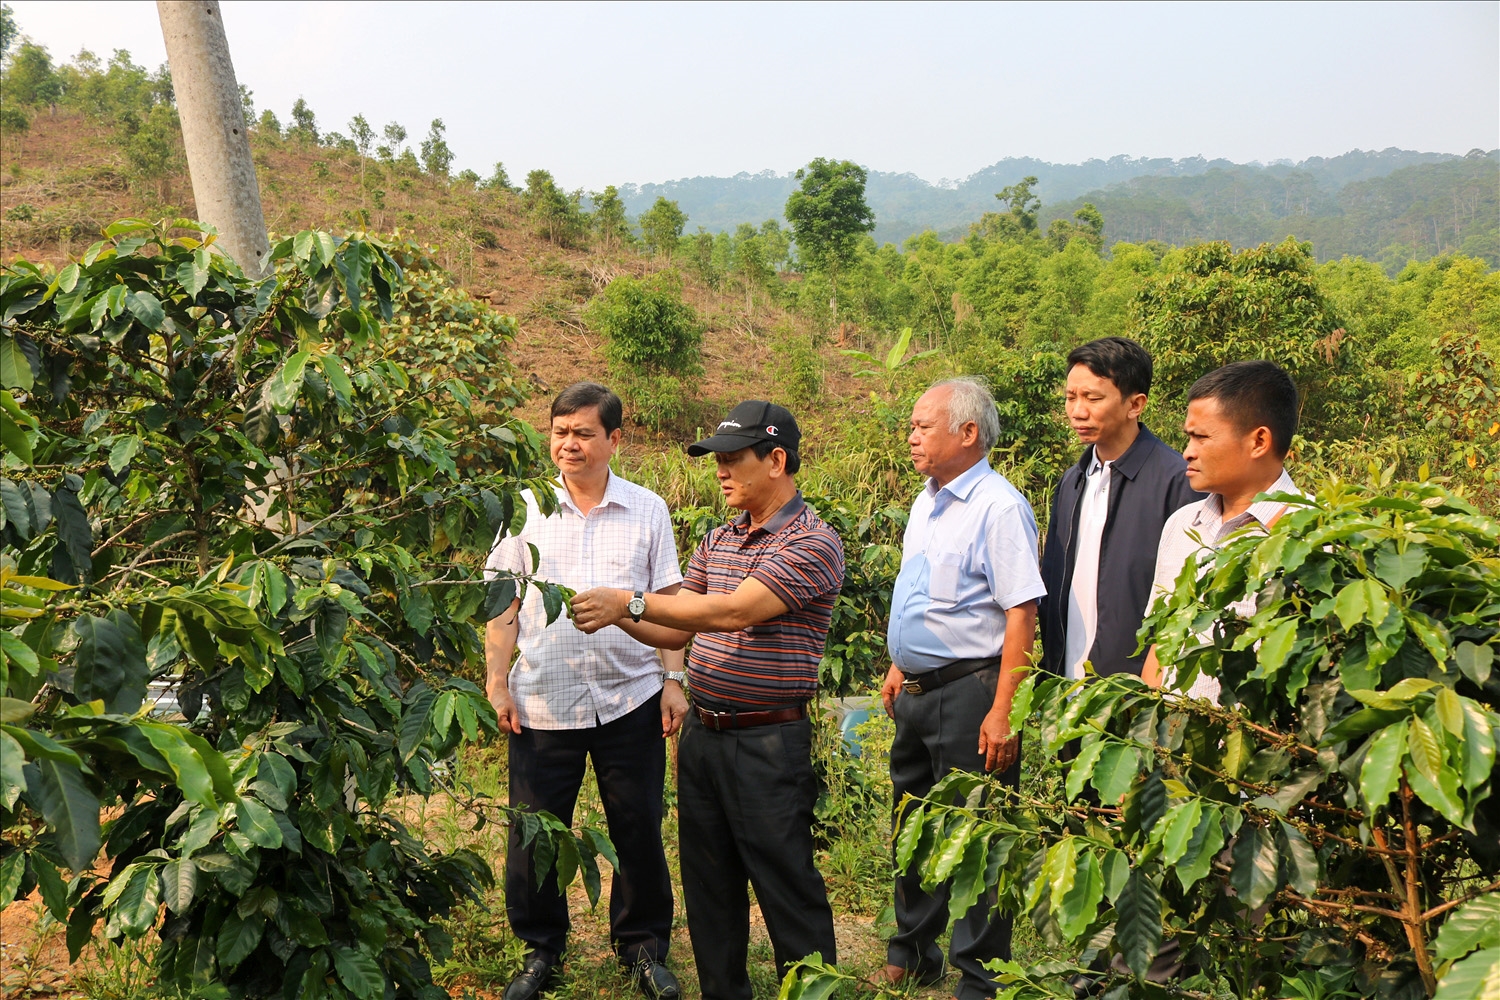 Bí thư Tỉnh ủy Kon Tum Dương Văn Trang (thứ 2 từ trái sang) thăm quan mô hình trồng cây cà phê của đồng bào DTTS xã Đăk Choong, huyện Đăk Glei